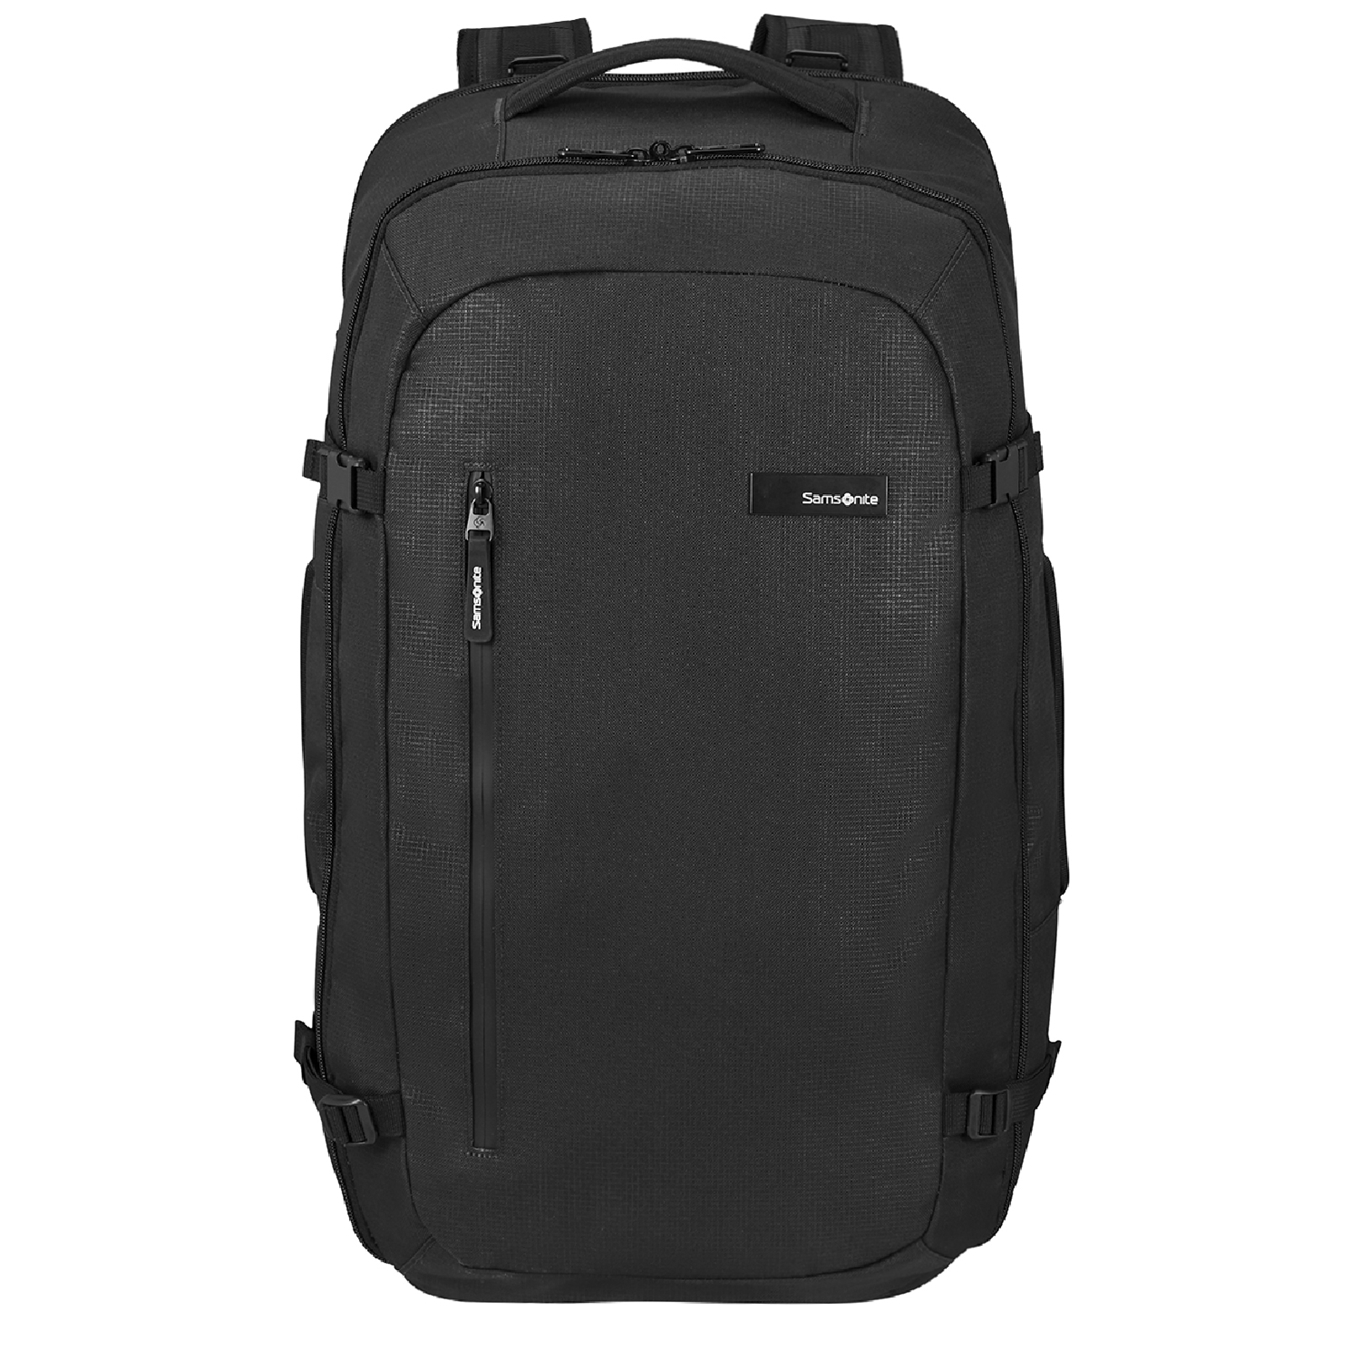 Samsonite Roader Travel Backpack M 55L deep black backpack